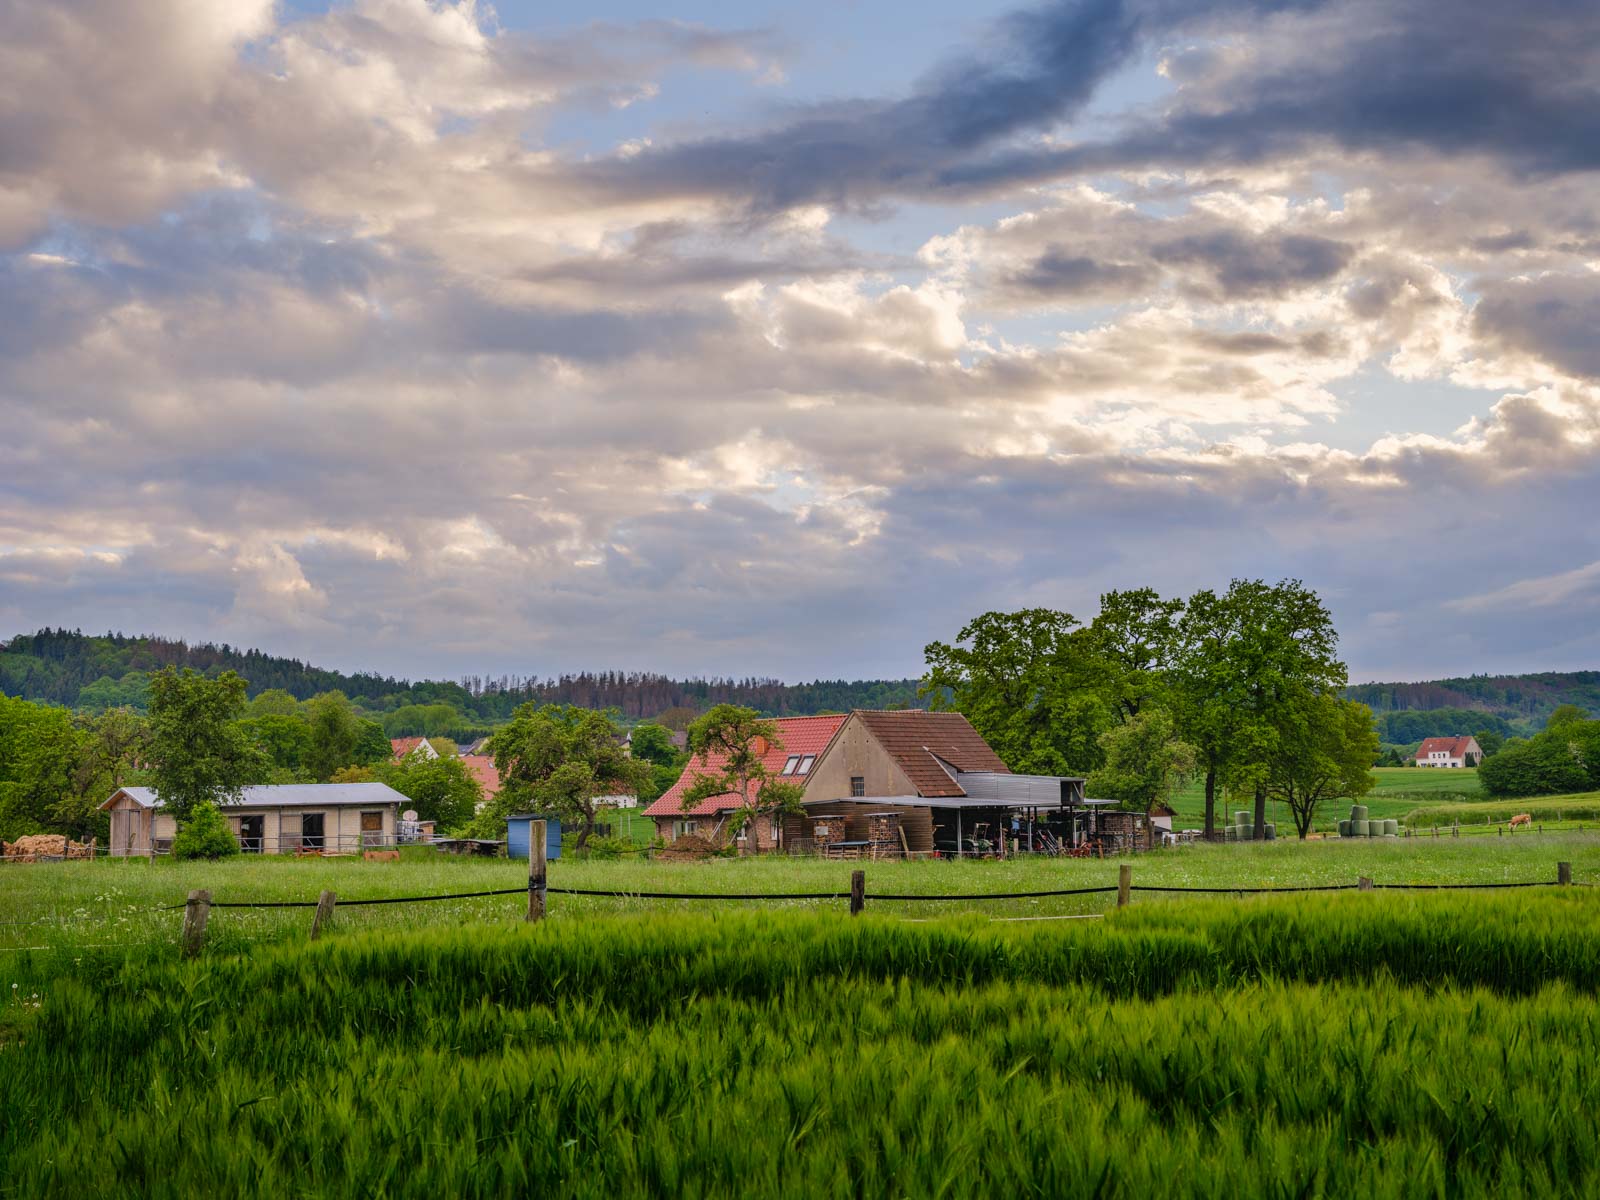 Farm and fields (Bielefeld-Dornberg, Germany).